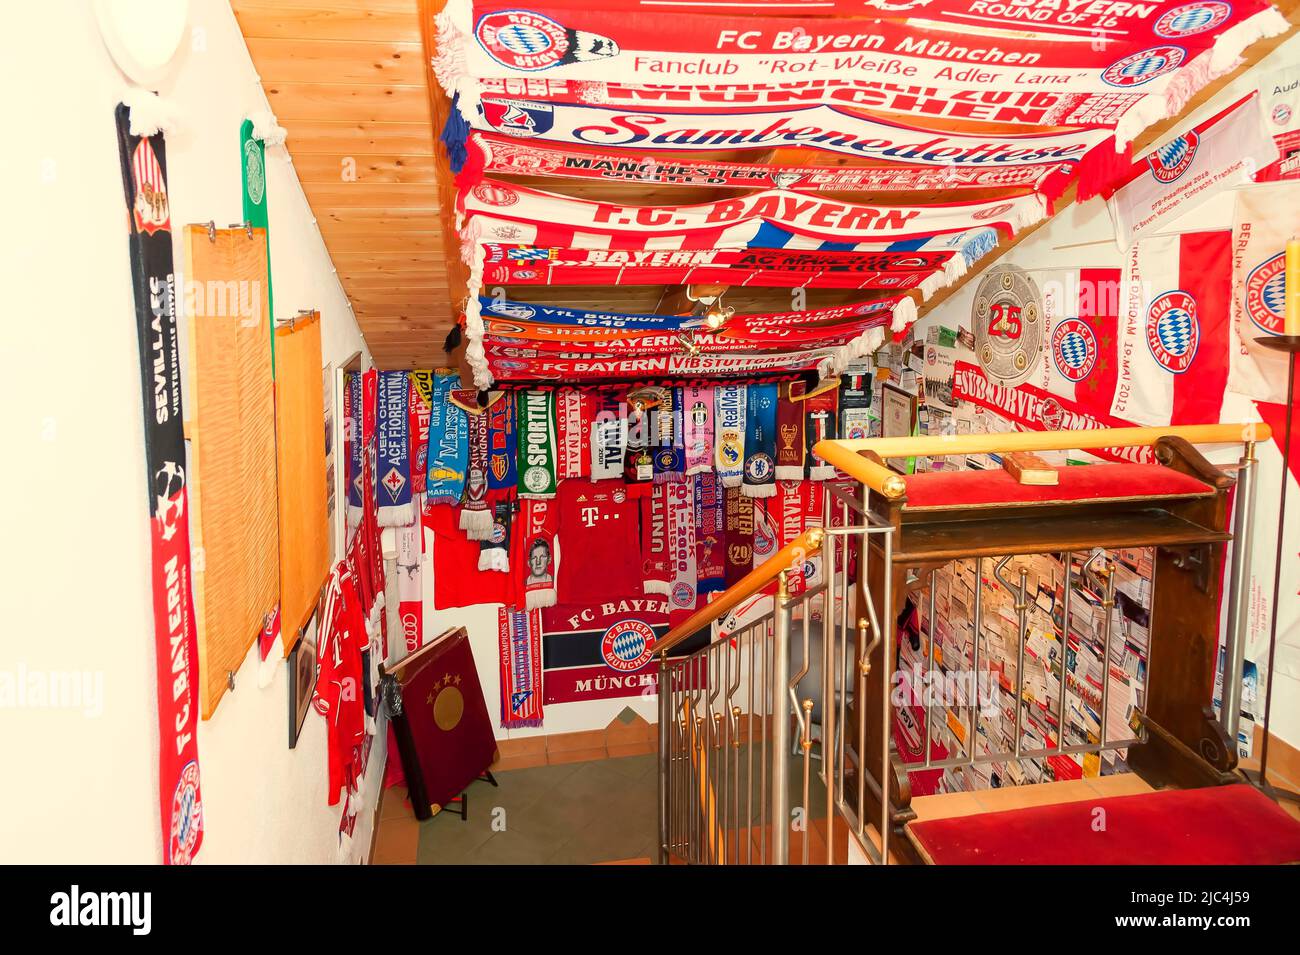 FC Bayern articoli fan, pennants di altri club nella scala, Mittenwald, Baviera, Germania Foto Stock